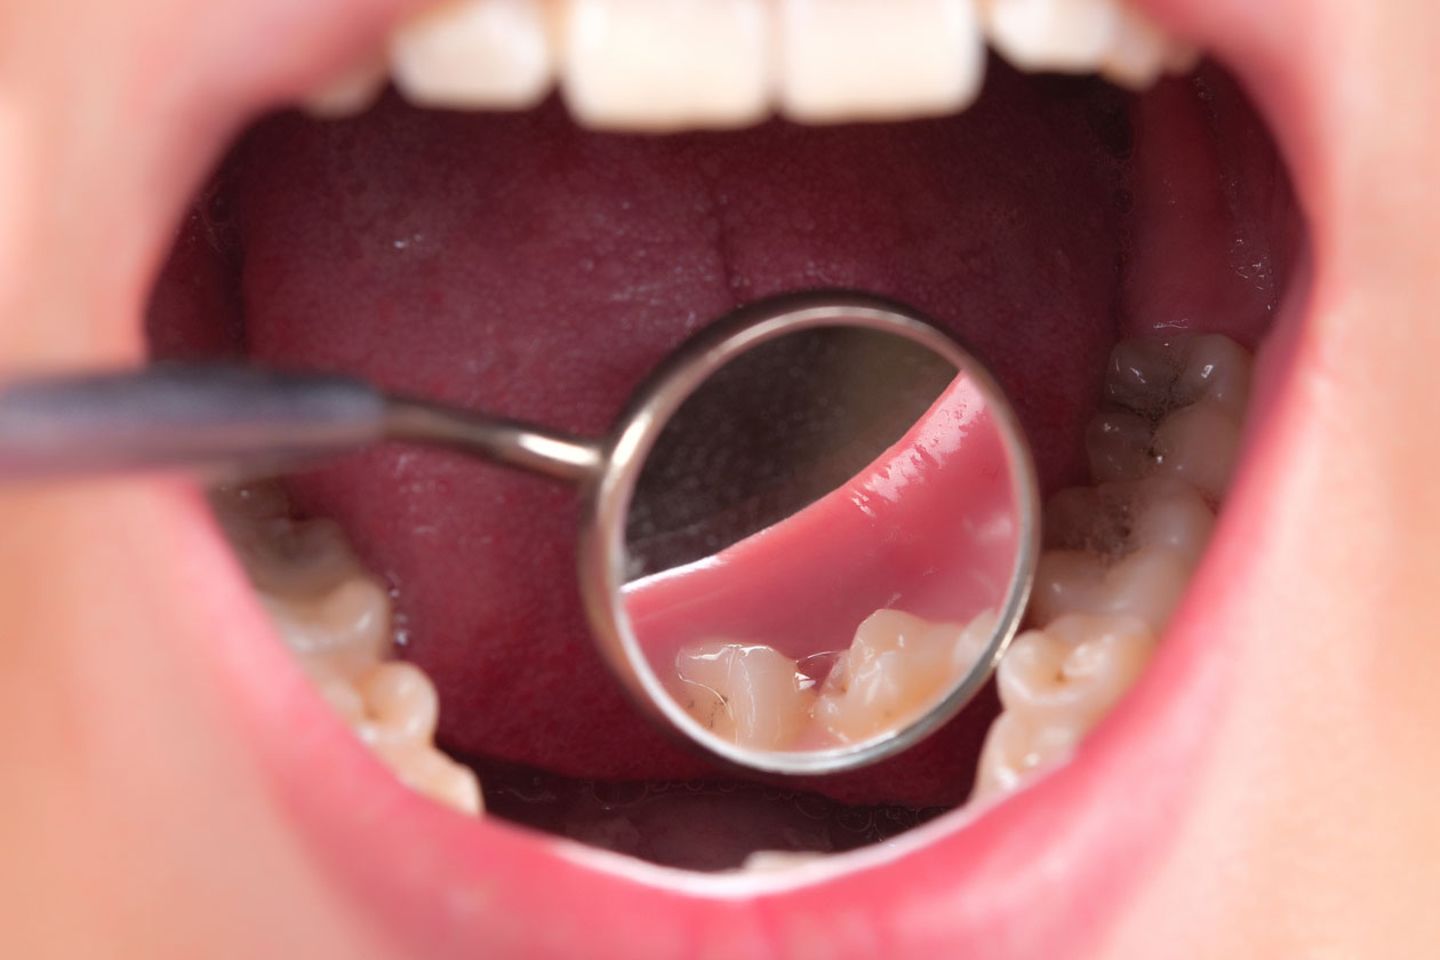 Der Zahnarzt schaut genau hin: Schert der Unterkiefer zur Seite aus?